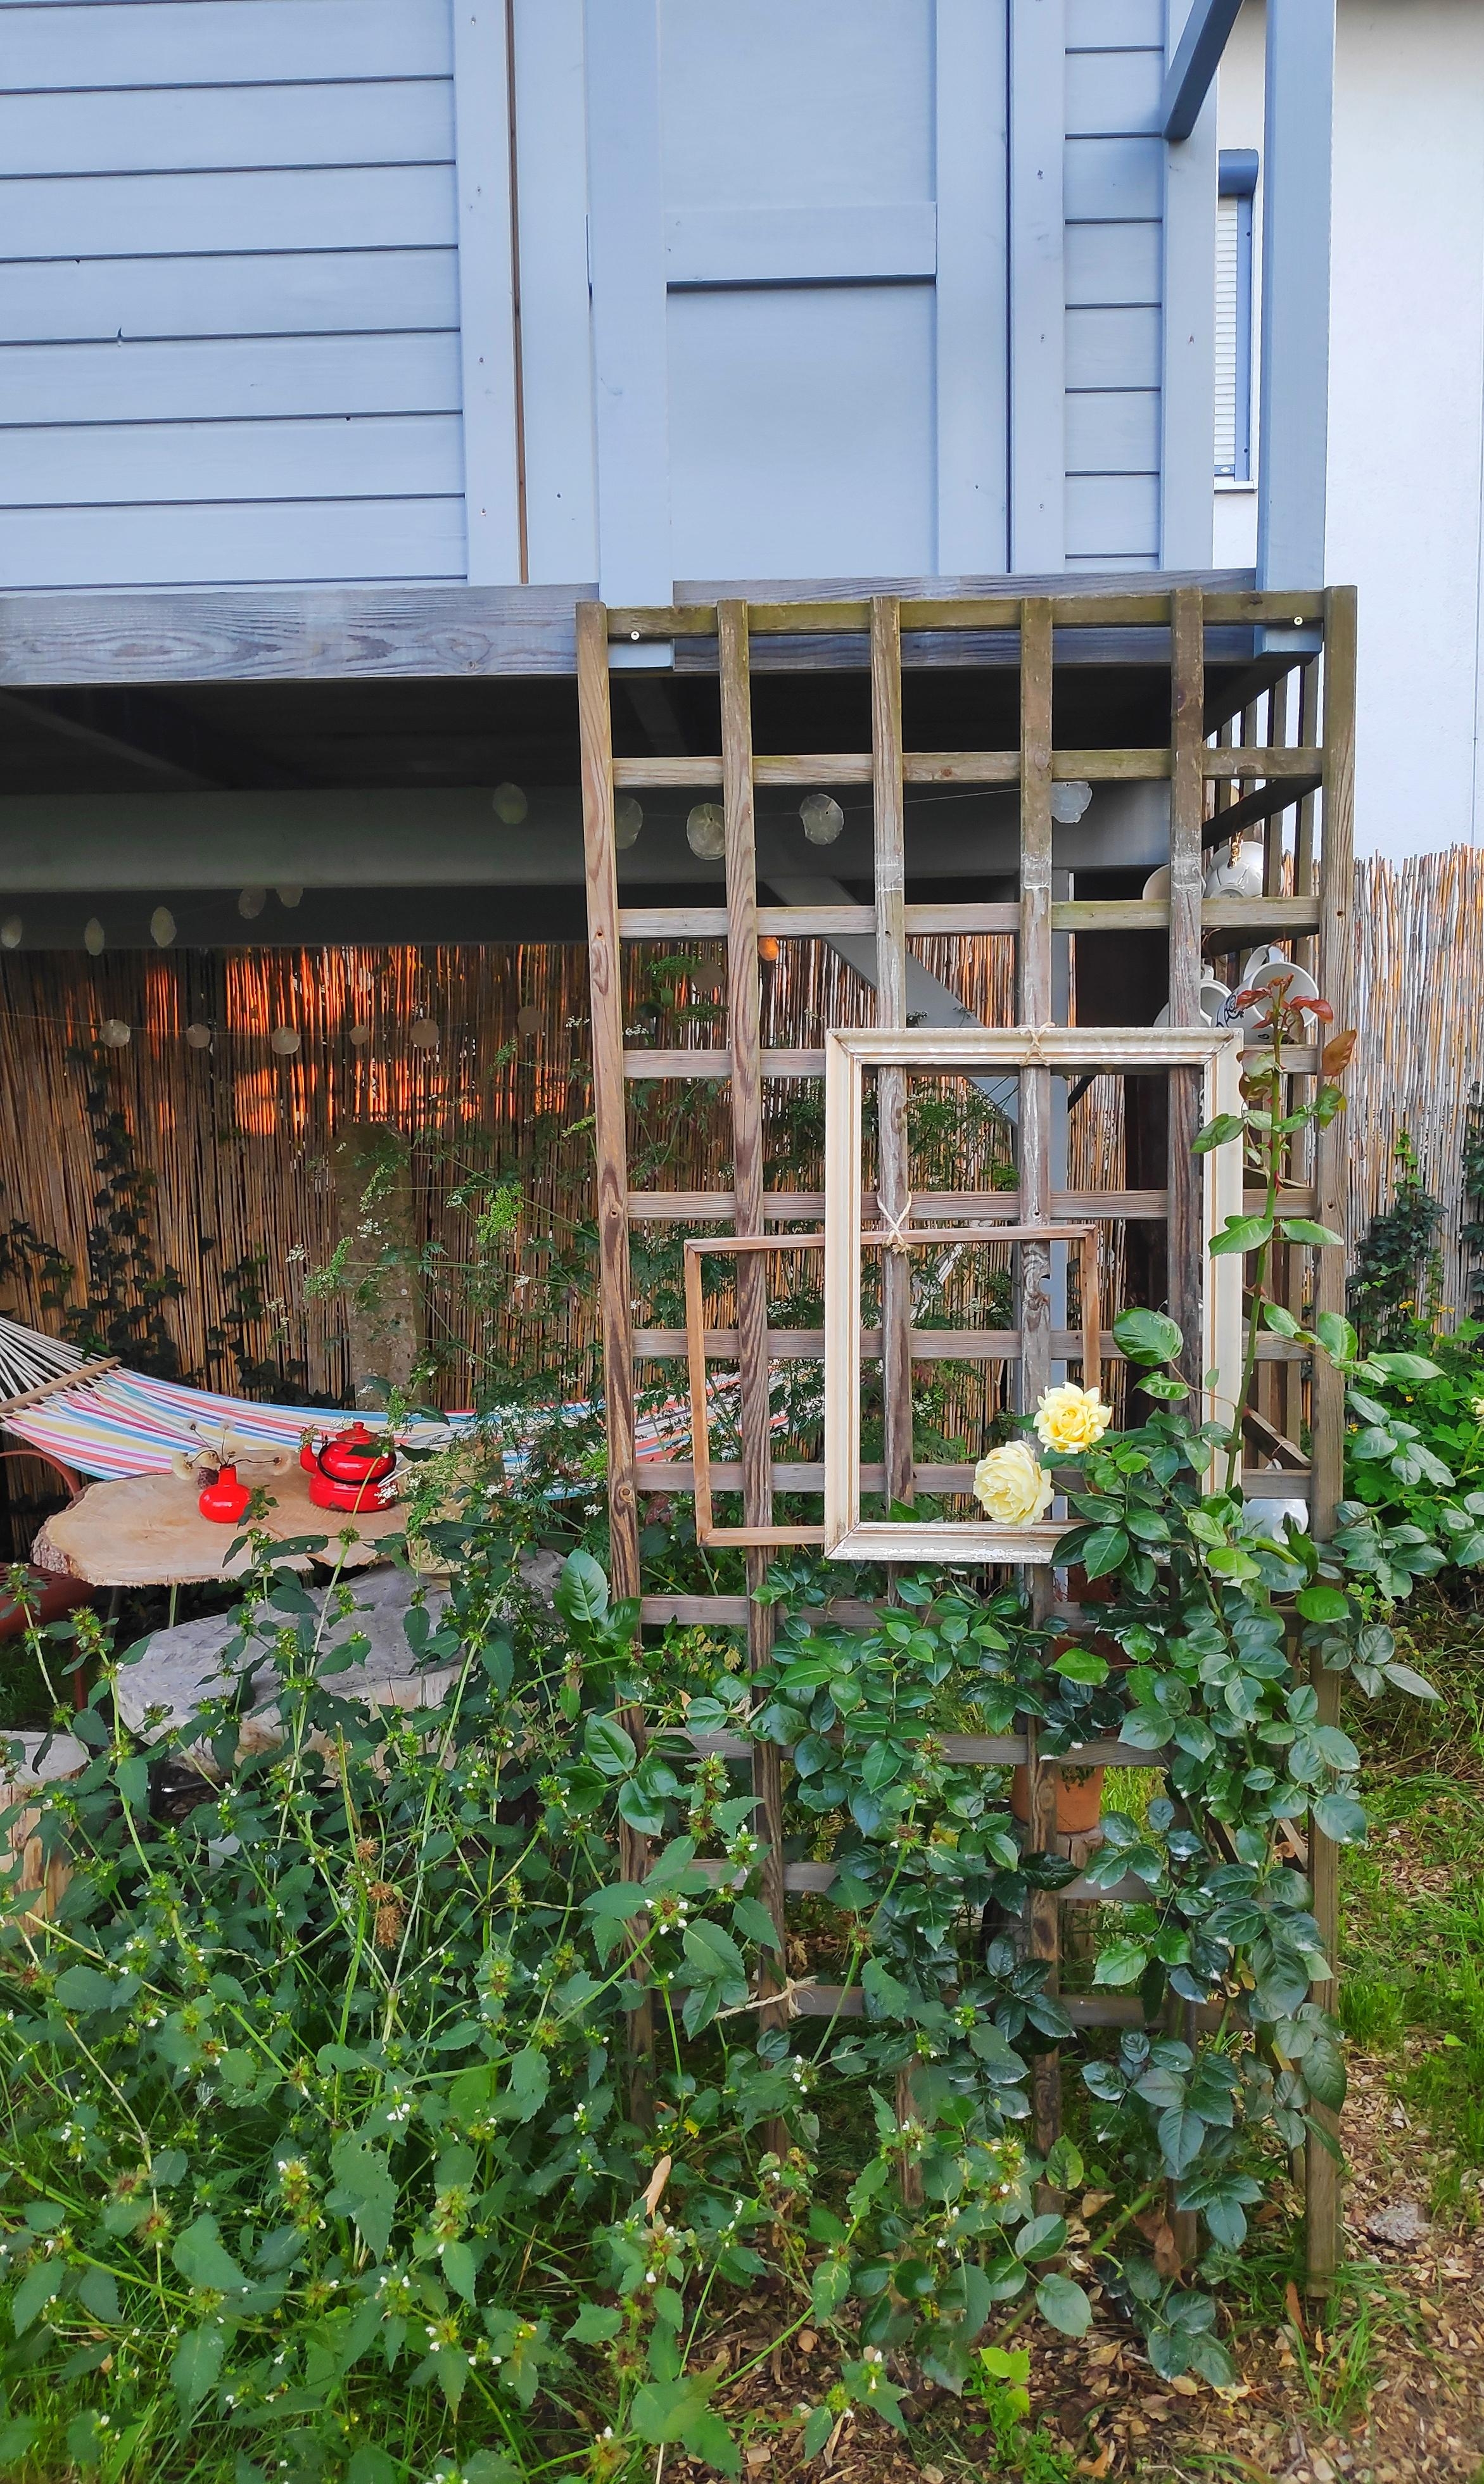 .Rosen.
.Bildhübsch.
#rose #bilderrahmen #upcycling #stelzenhaus #gartenhäusschen #gartenhaus #malanders #DIY